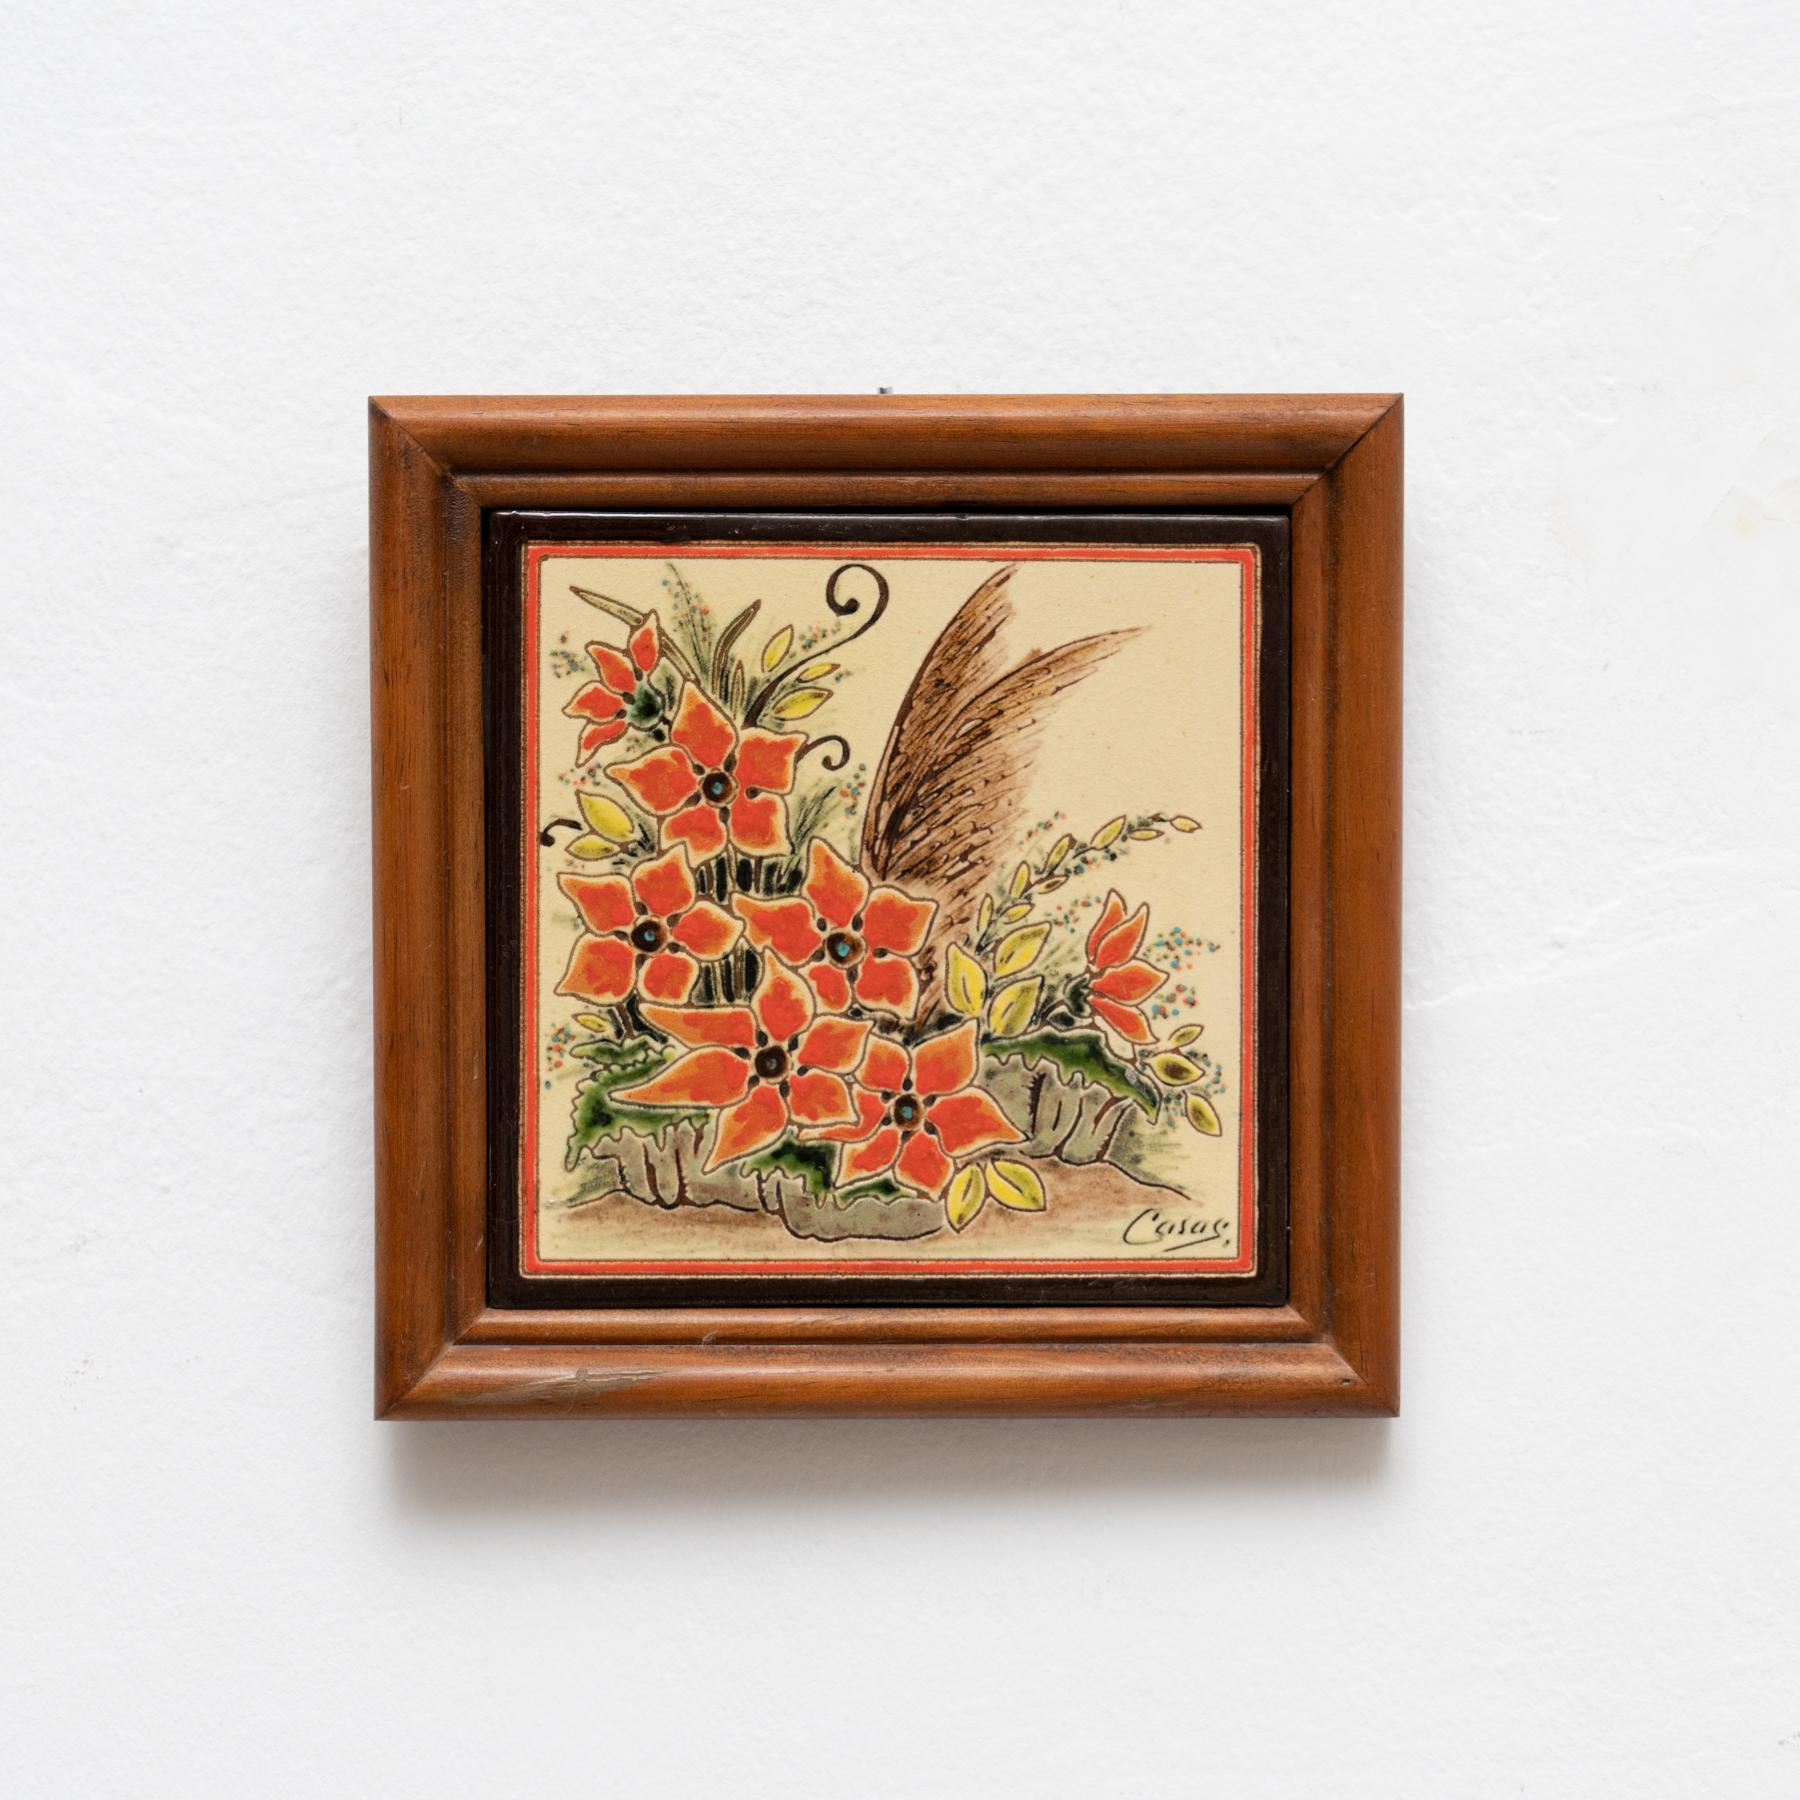 Œuvre d'art floral en céramique peinte à la main par l'artiste catalan Casas, vers 1960.
Encadré. Signé.

En état d'origine, avec de légères usures dues à l'âge et à l'utilisation, préservant une belle patine.